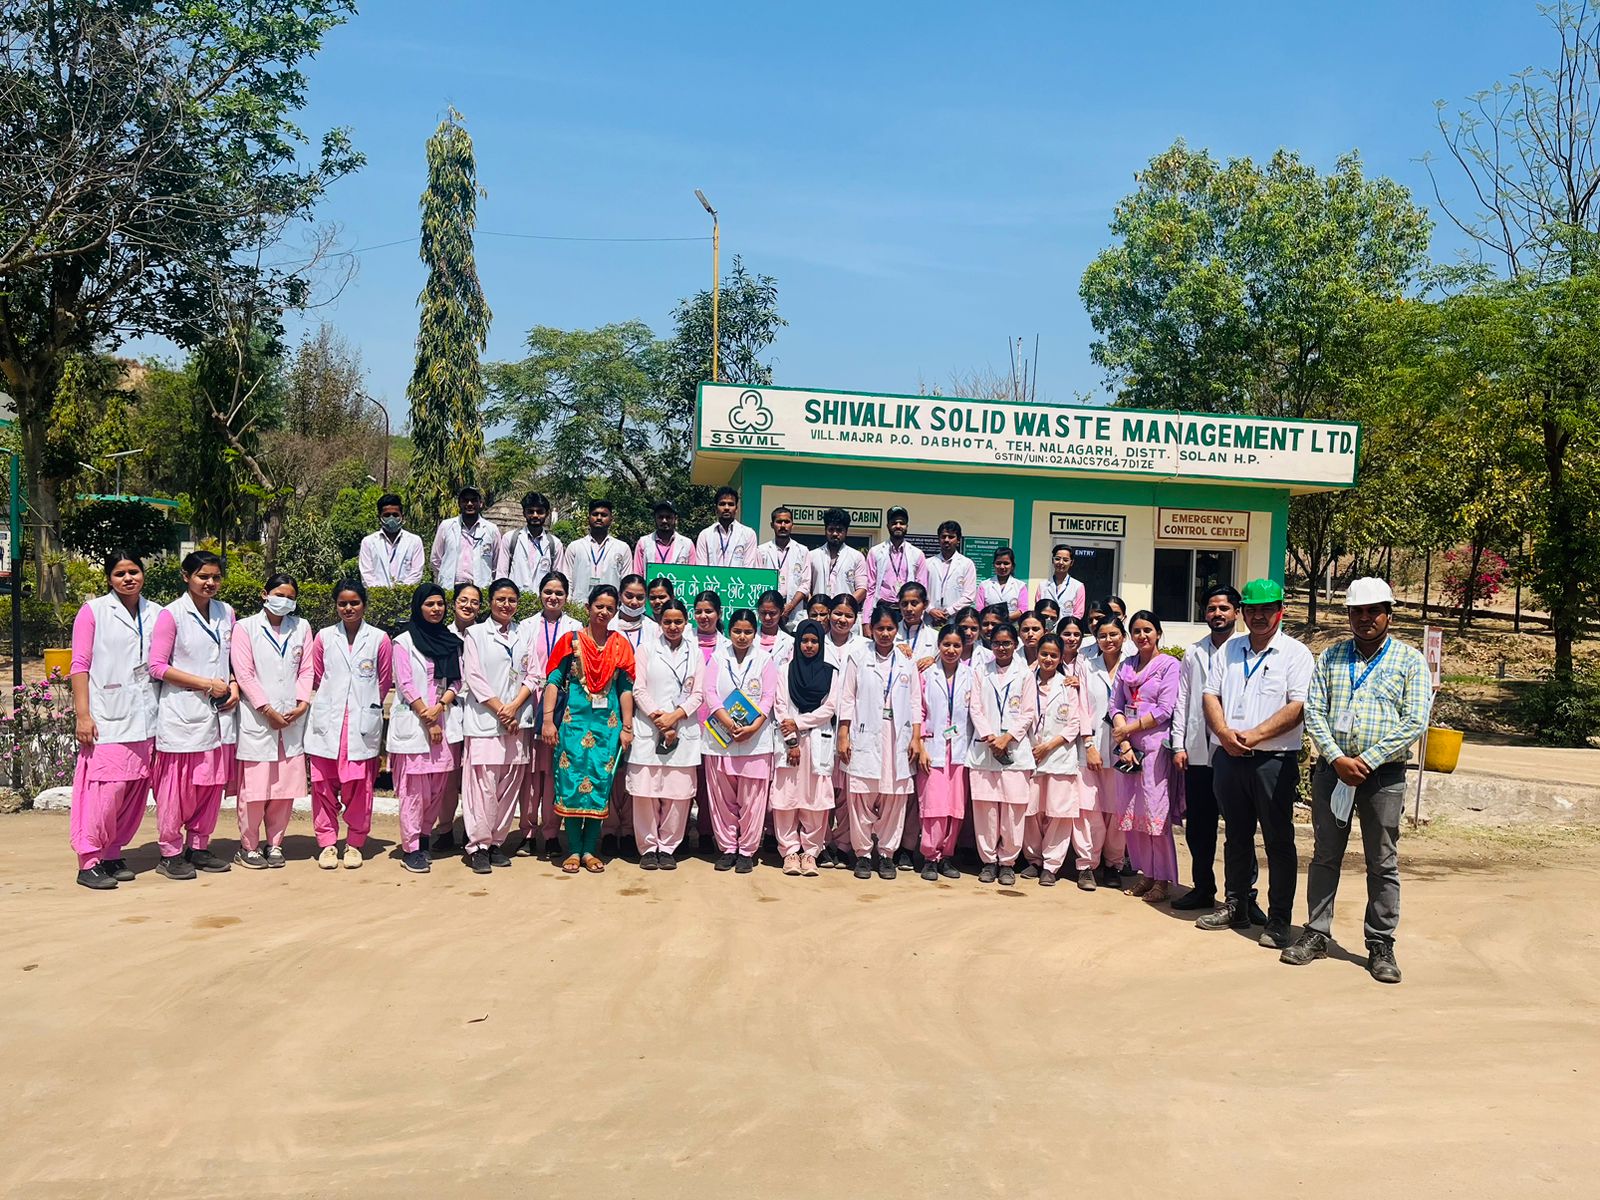 Educational visit of Shivalik Solid Waste Management Ltd.